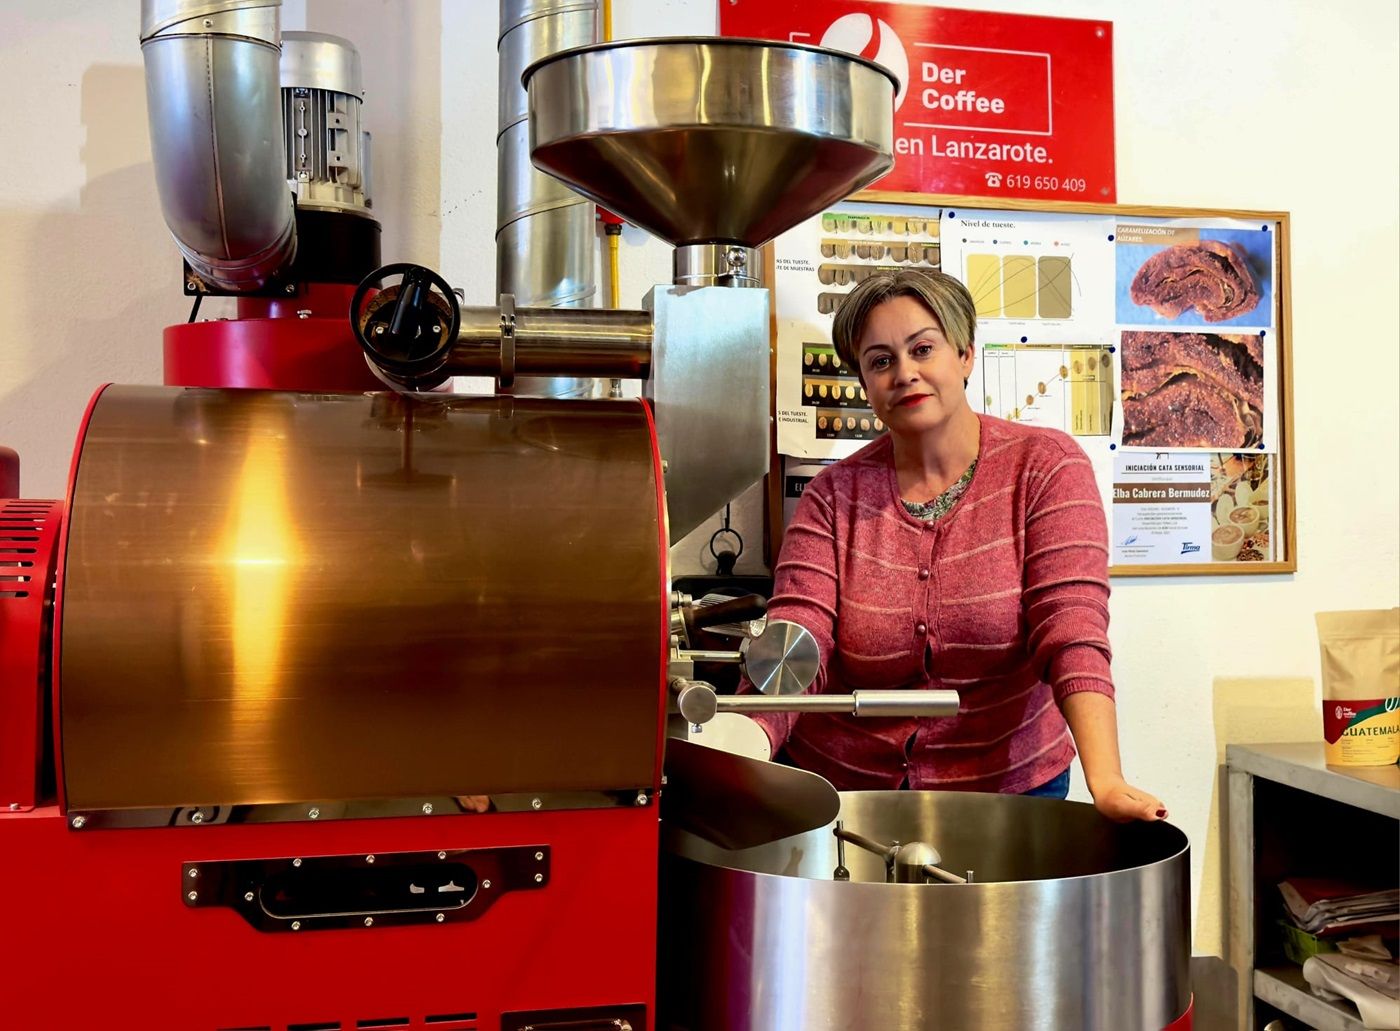 Elba Cabrera, propietaria del café de especialidad Der Coffee